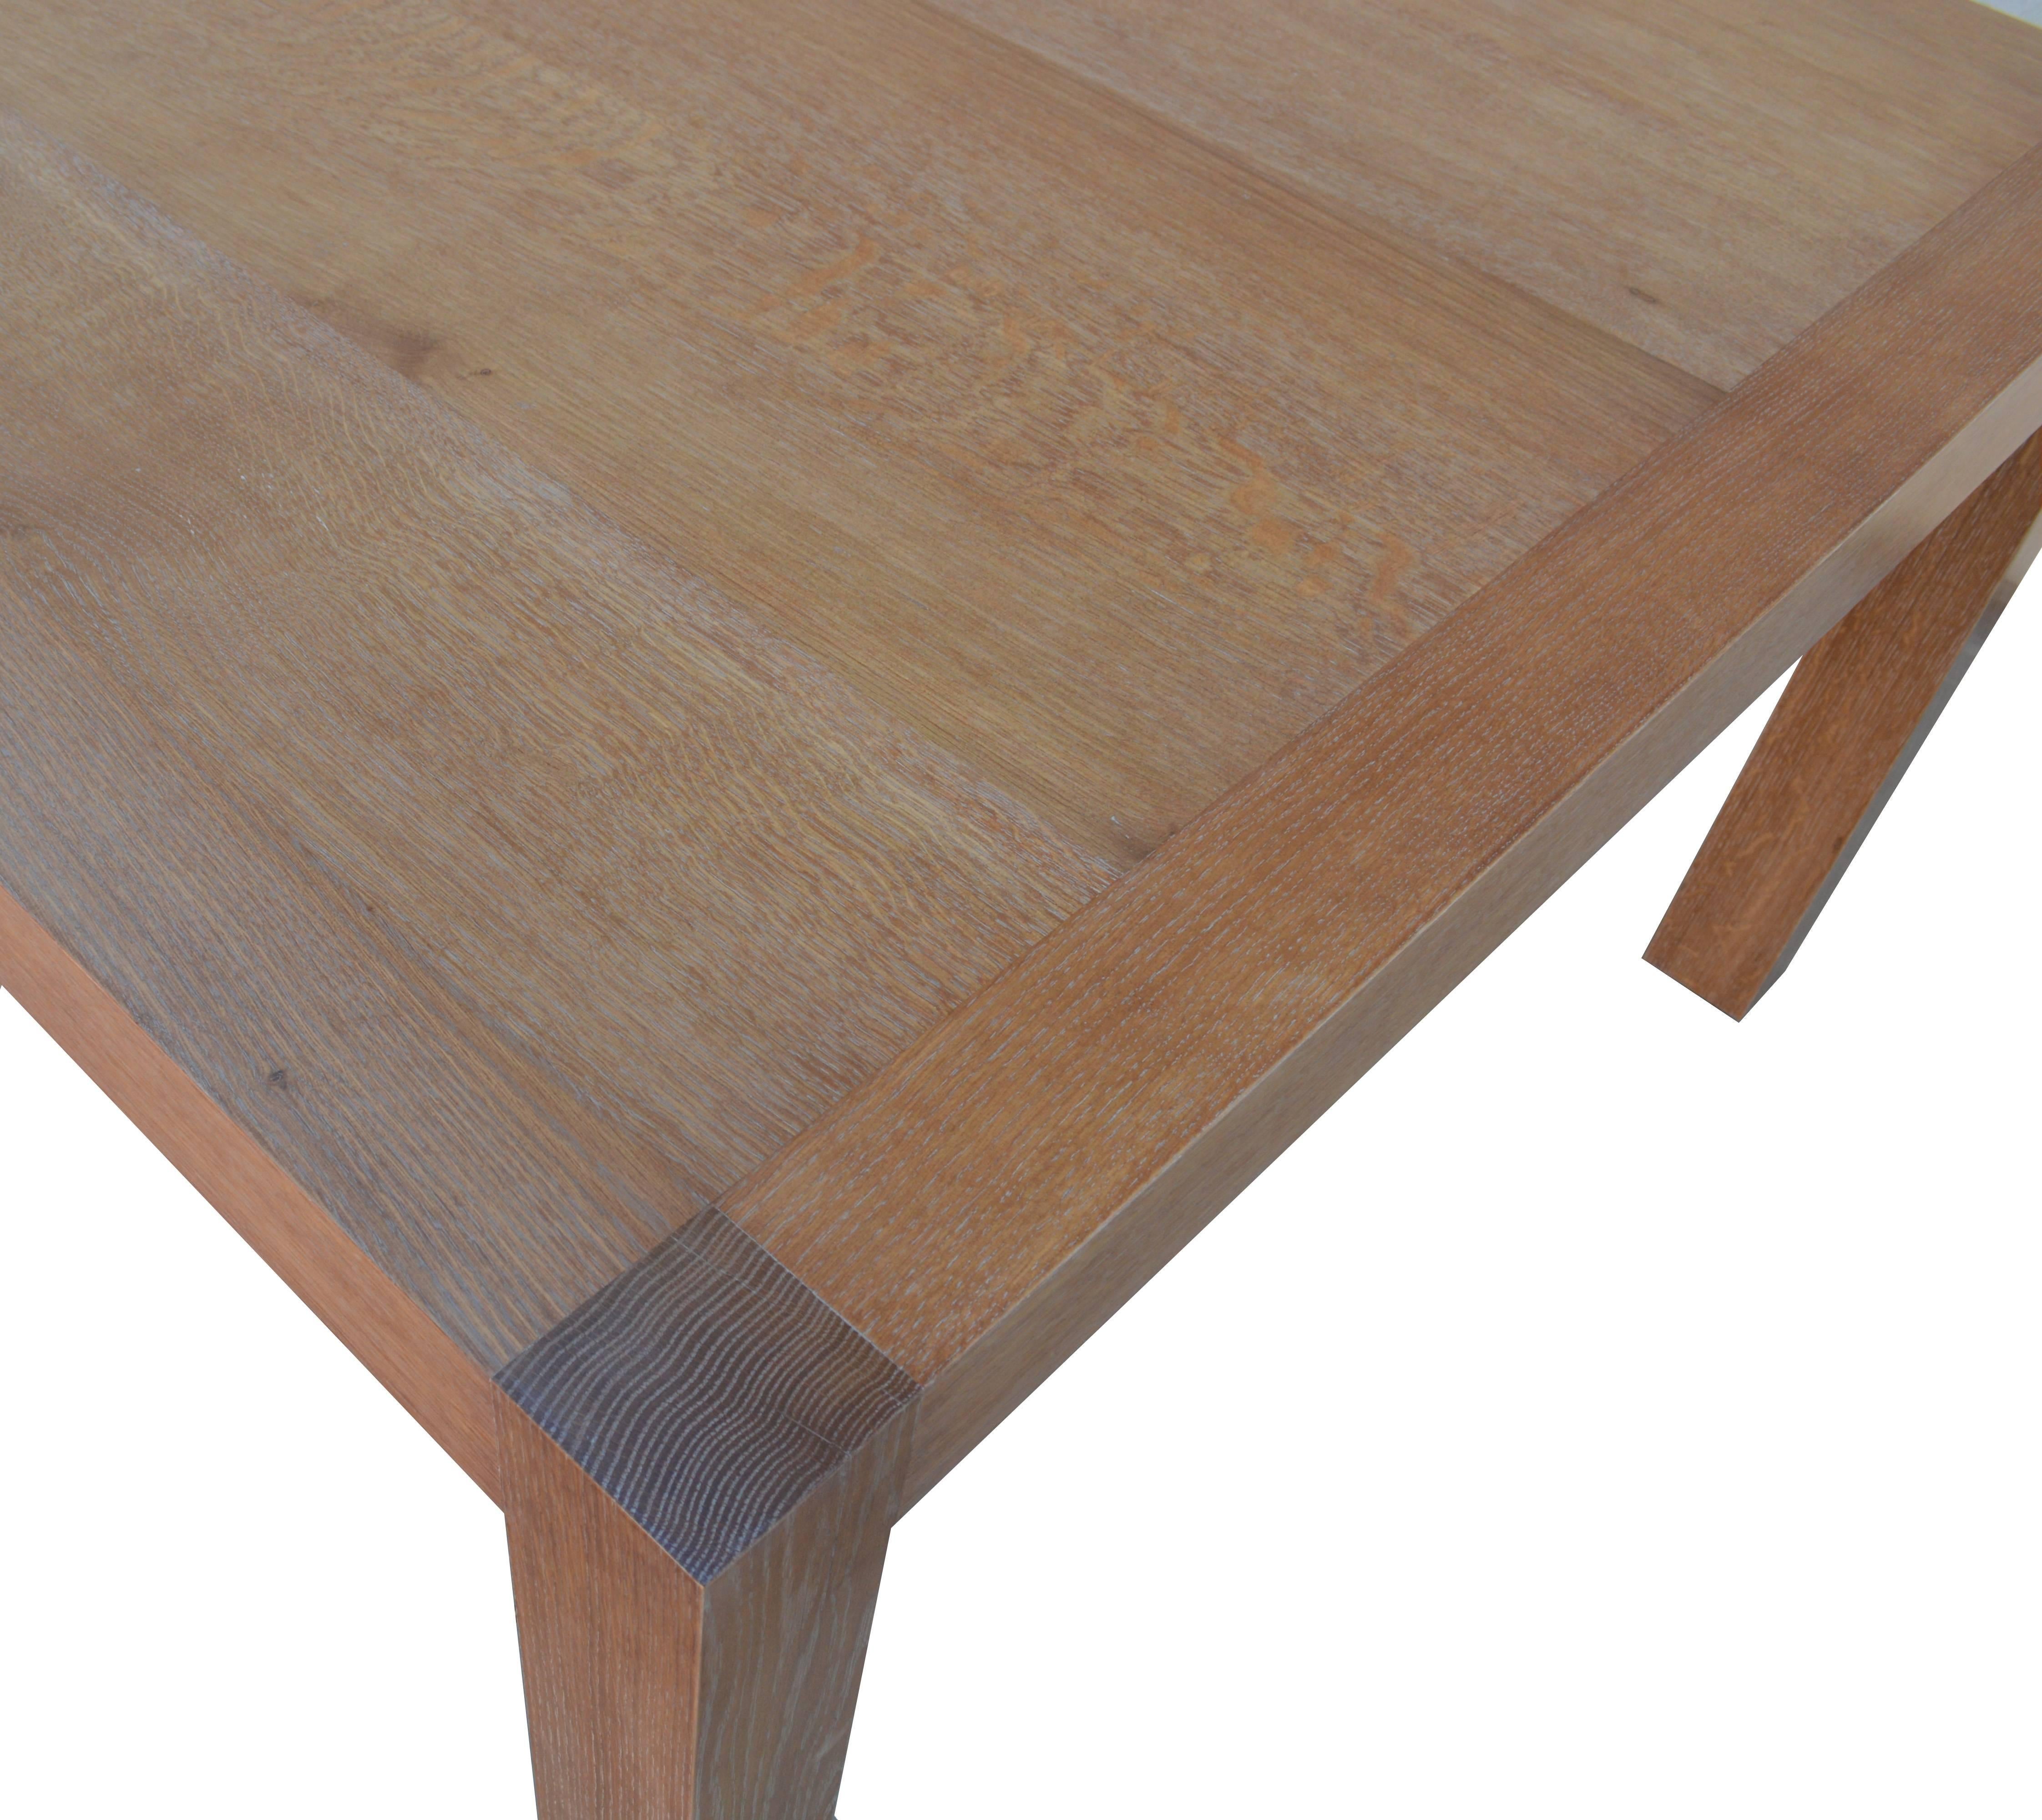 rift sawn white oak table